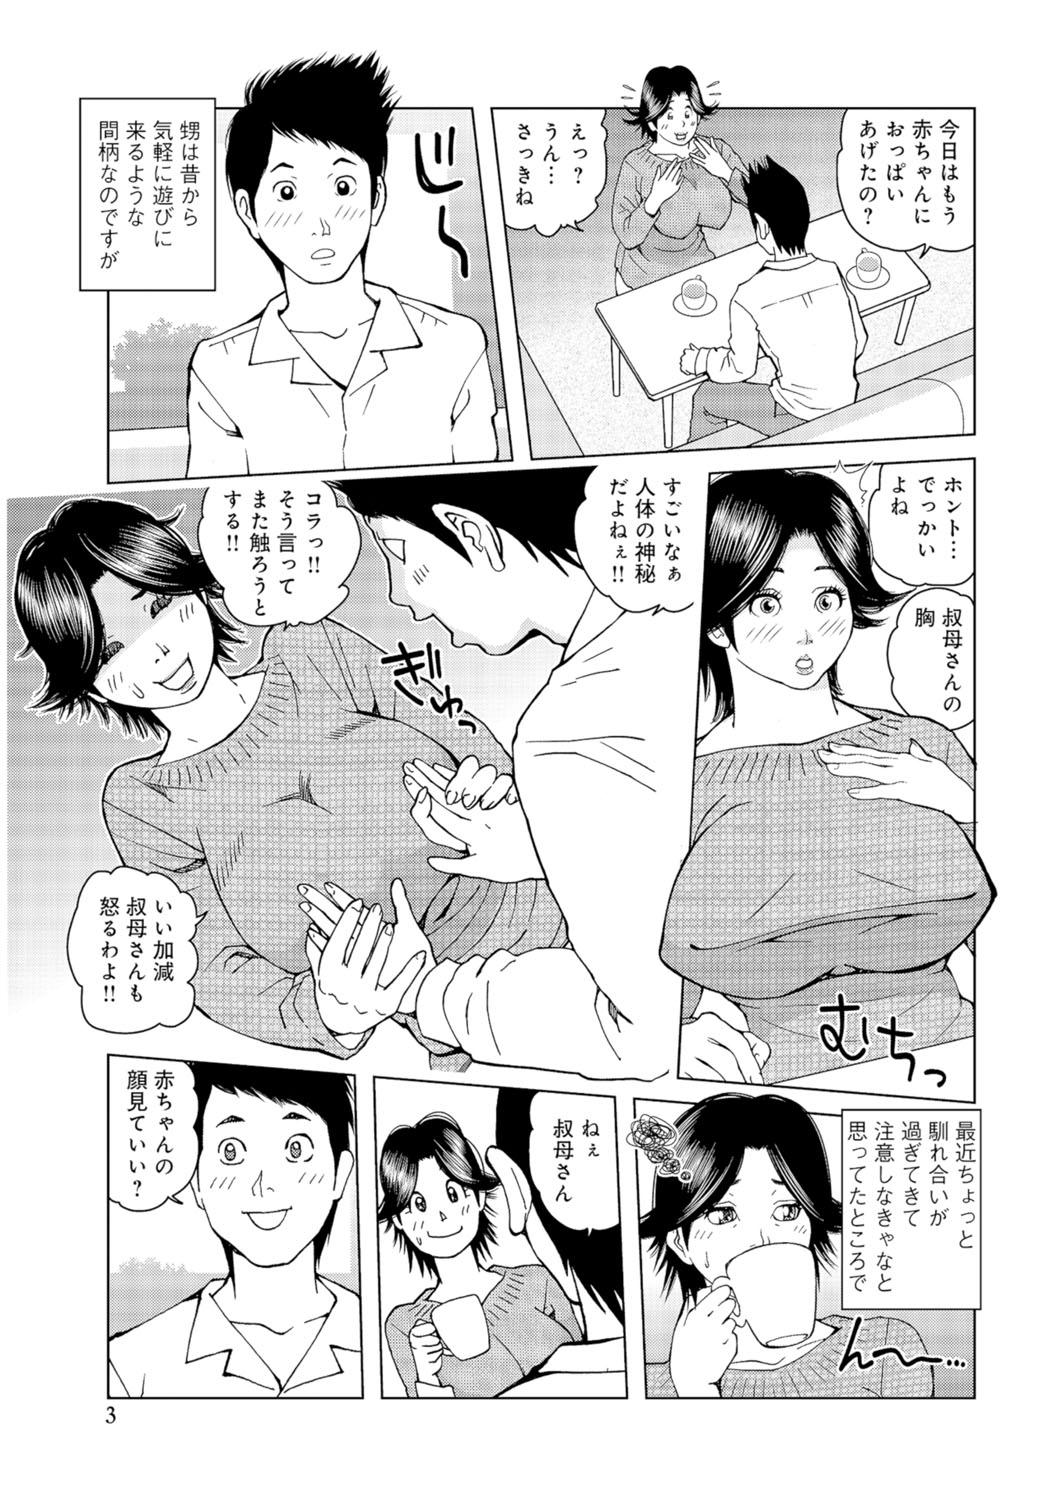 Oba-san Dashite mo ii? Vol. 01 55